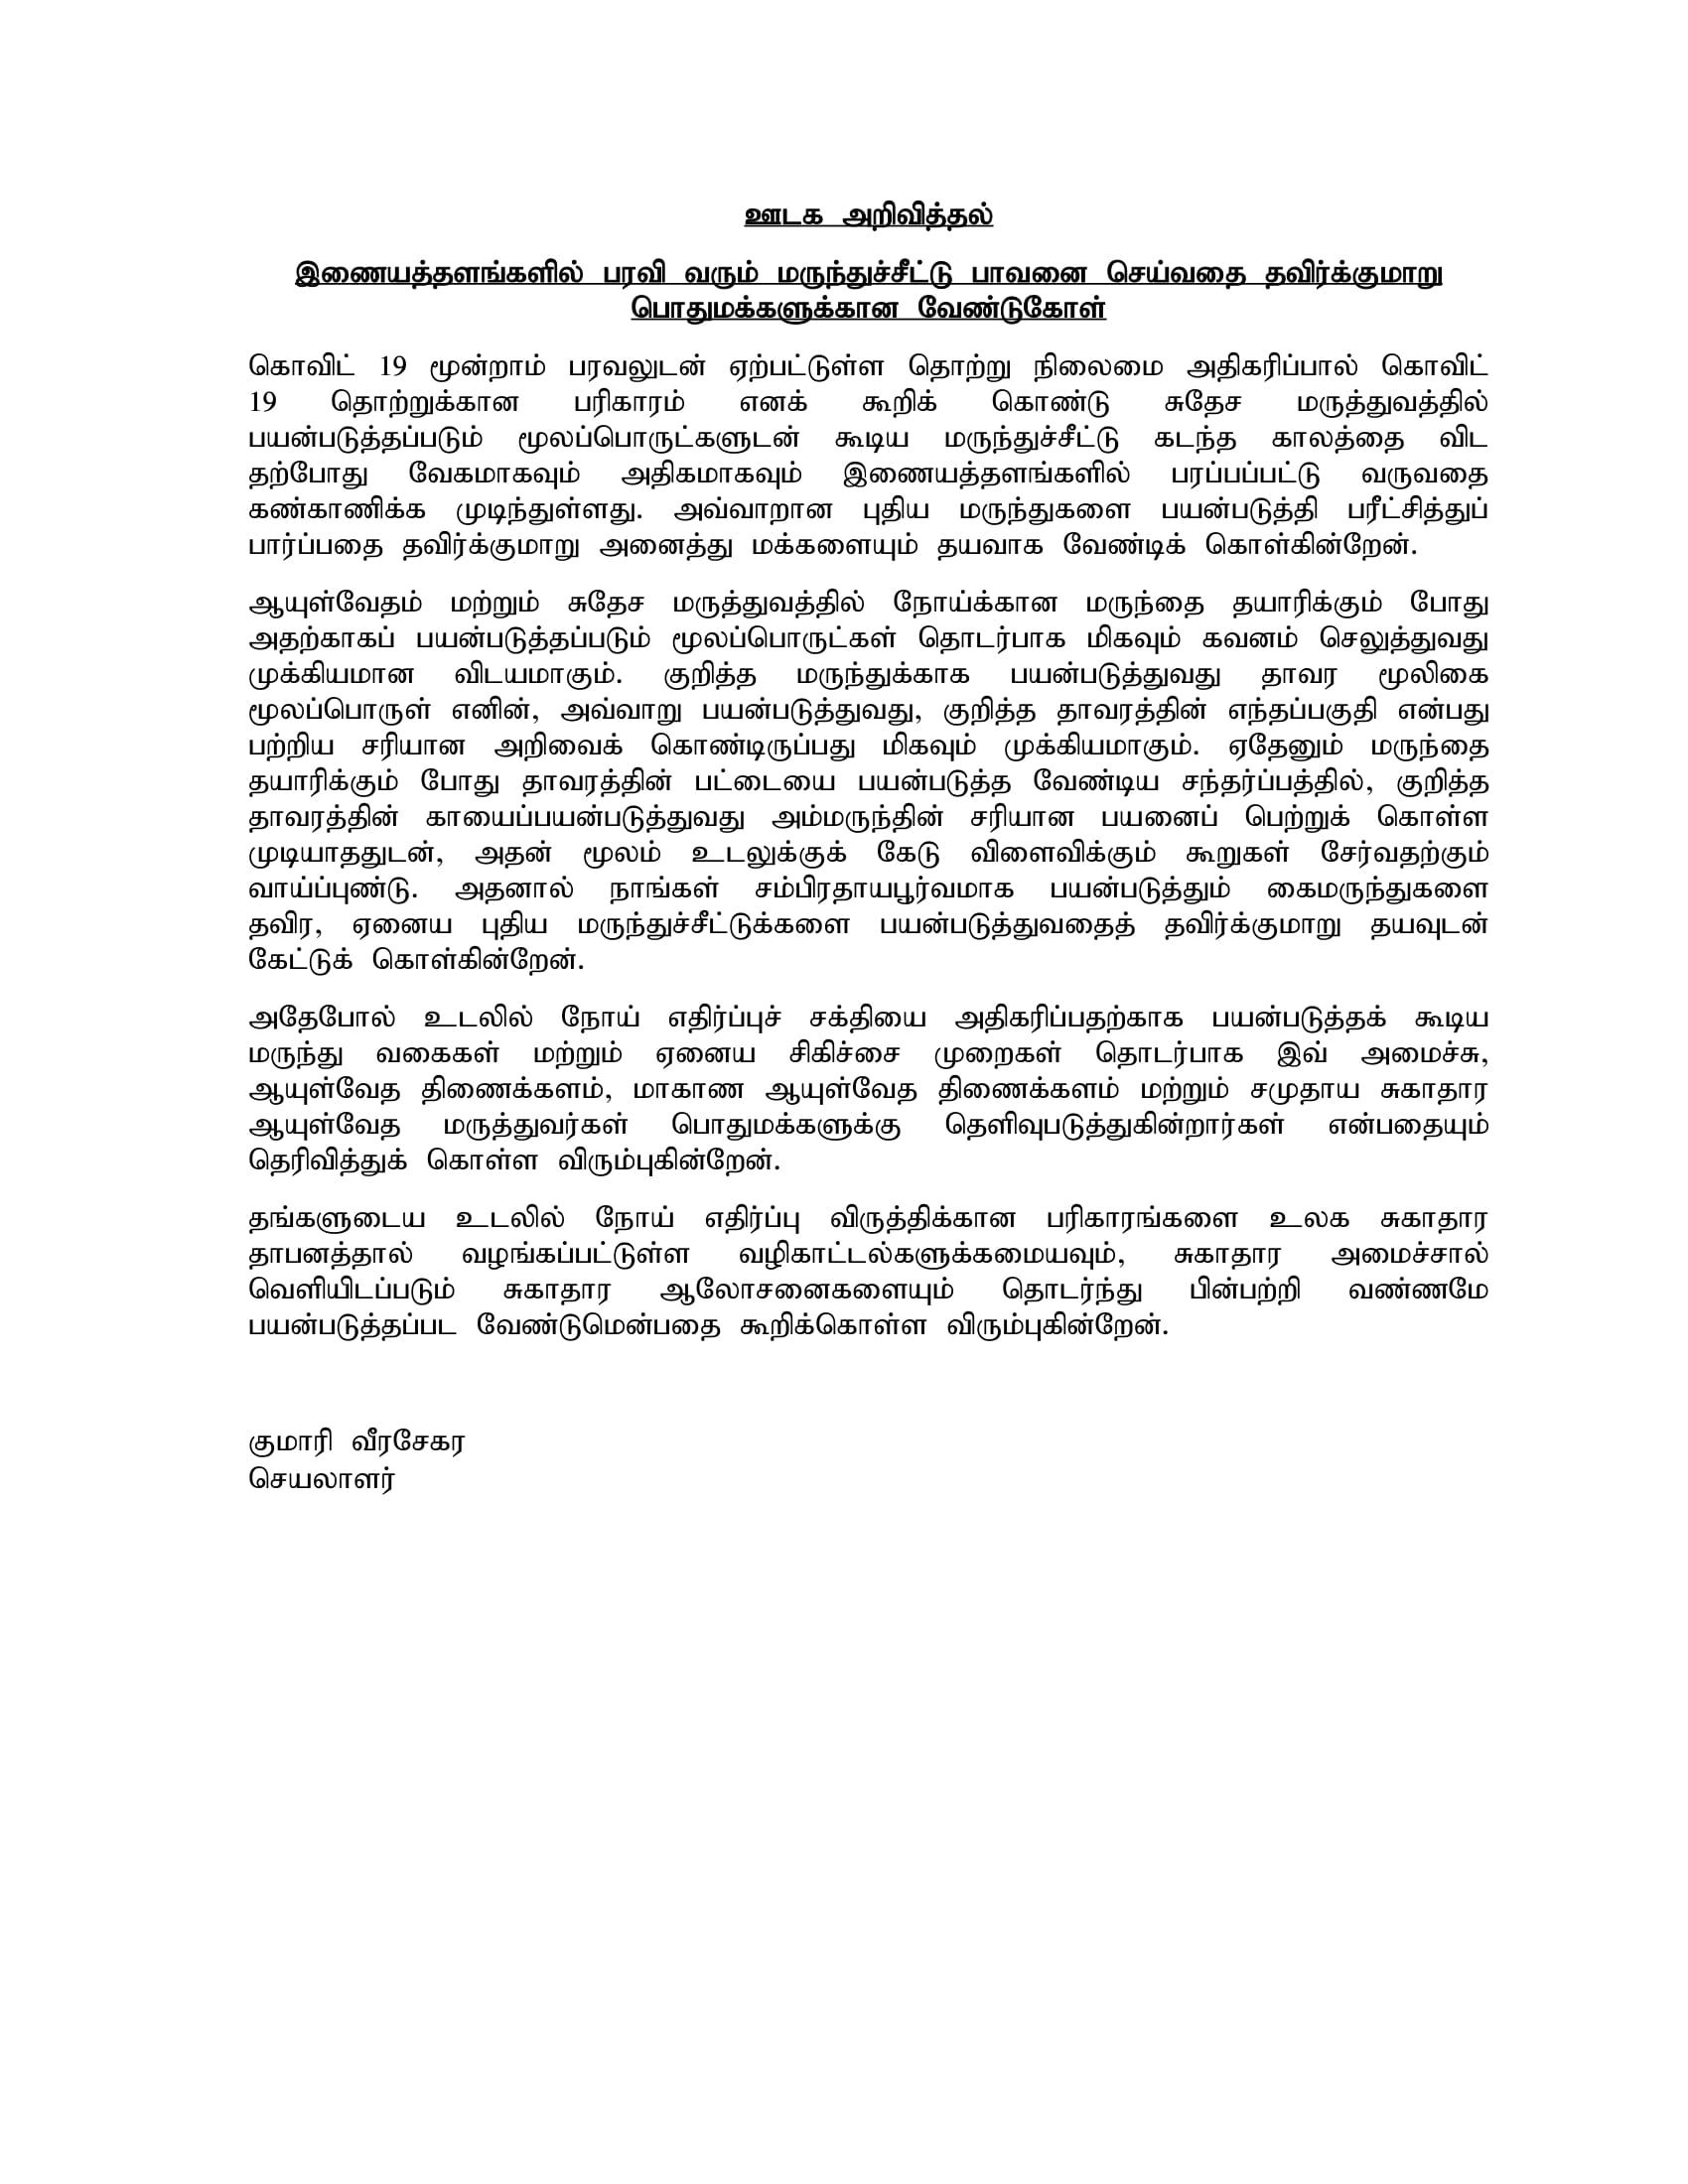 Media Release Tamil 1